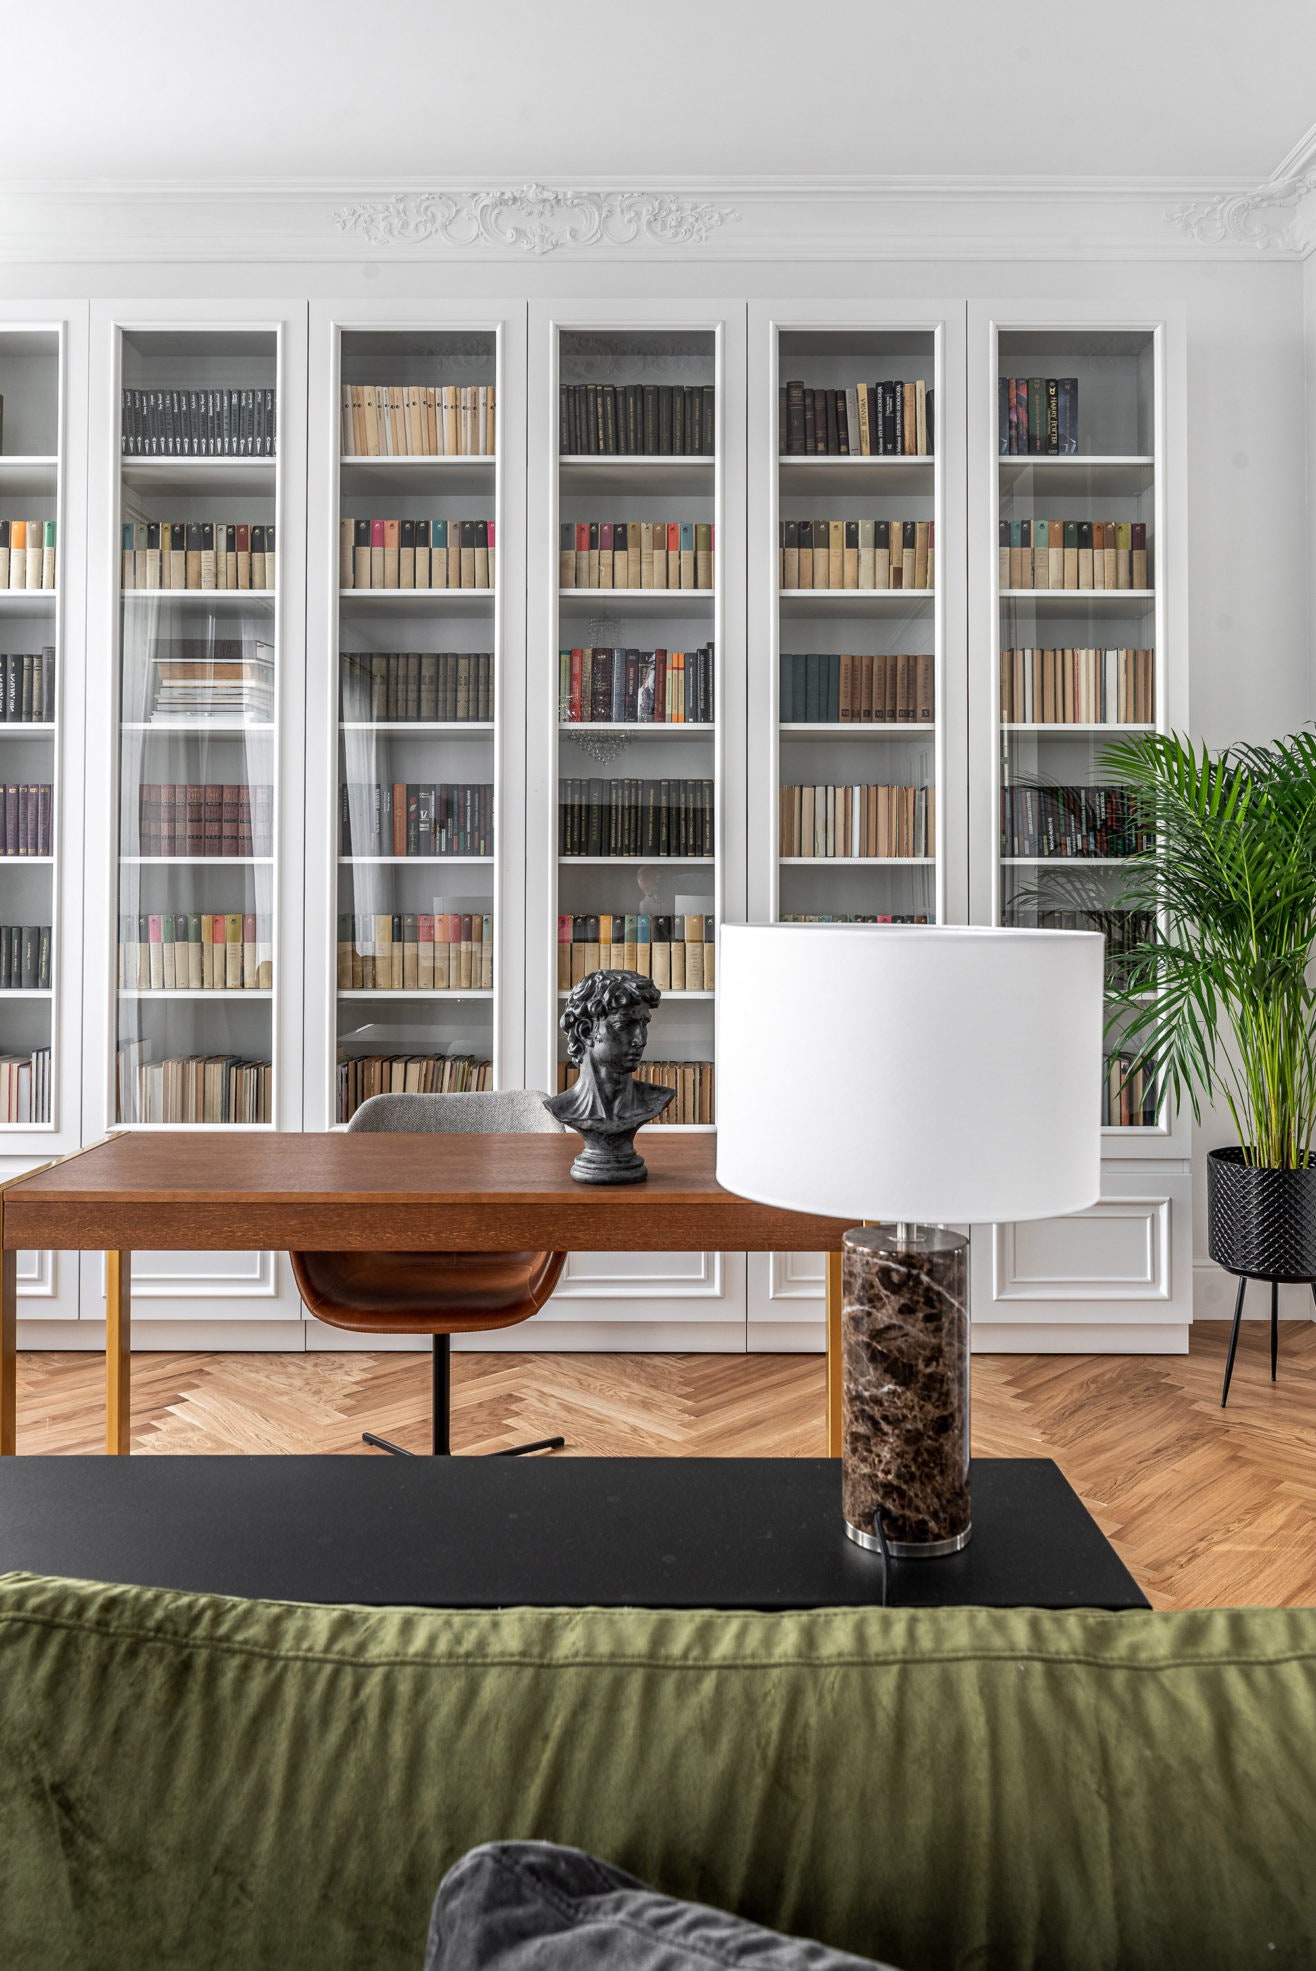 Кресло Zuiver консоль Iddo лампа Aromas del Campo диван Vanessa стол и библиотека сделаны по эскизам дизайнера в...